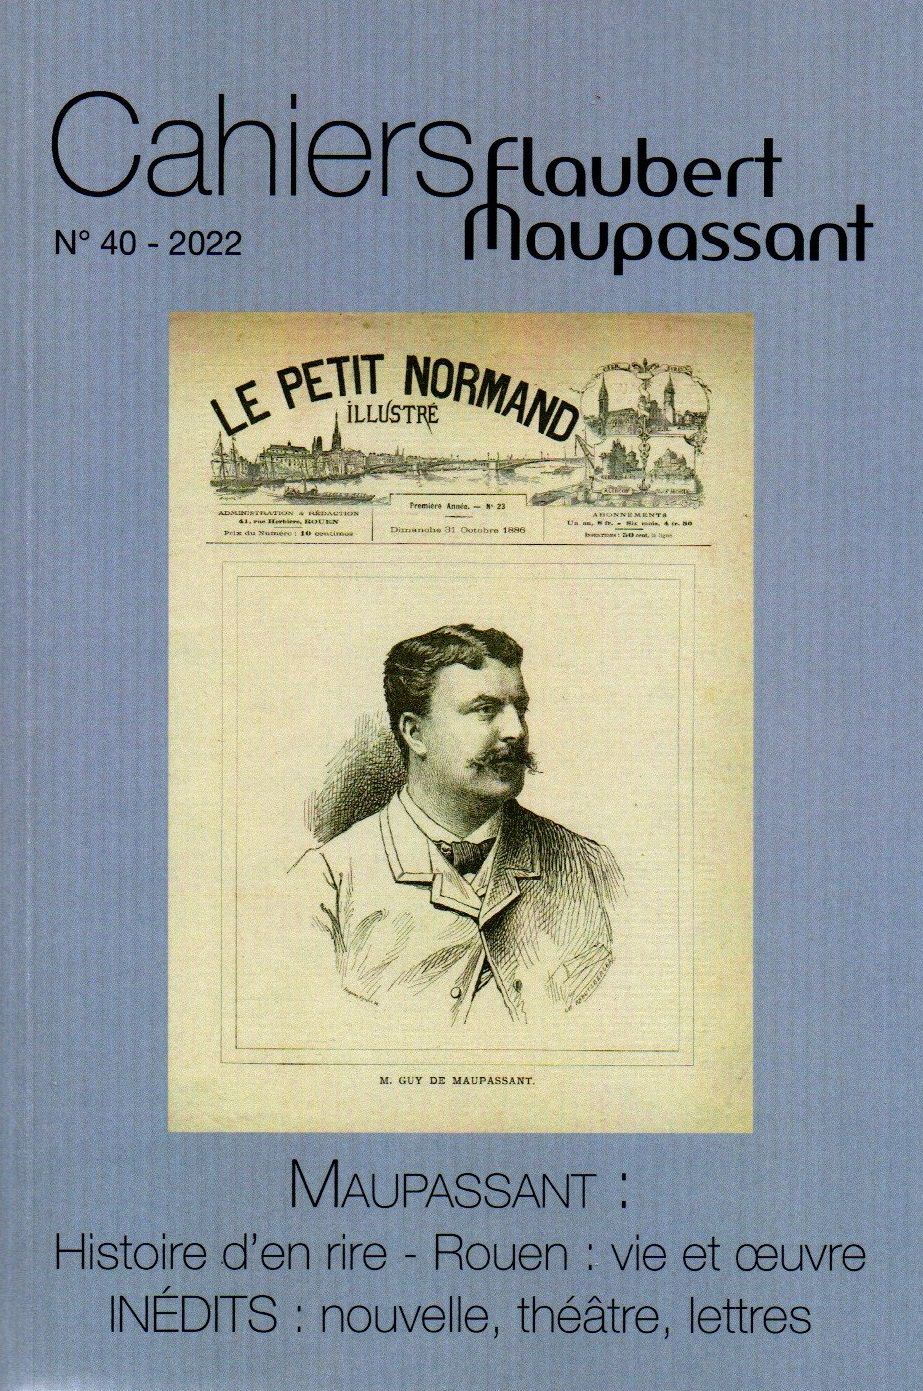 Cahiers Flaubert Maupassant, n° 40, 2022